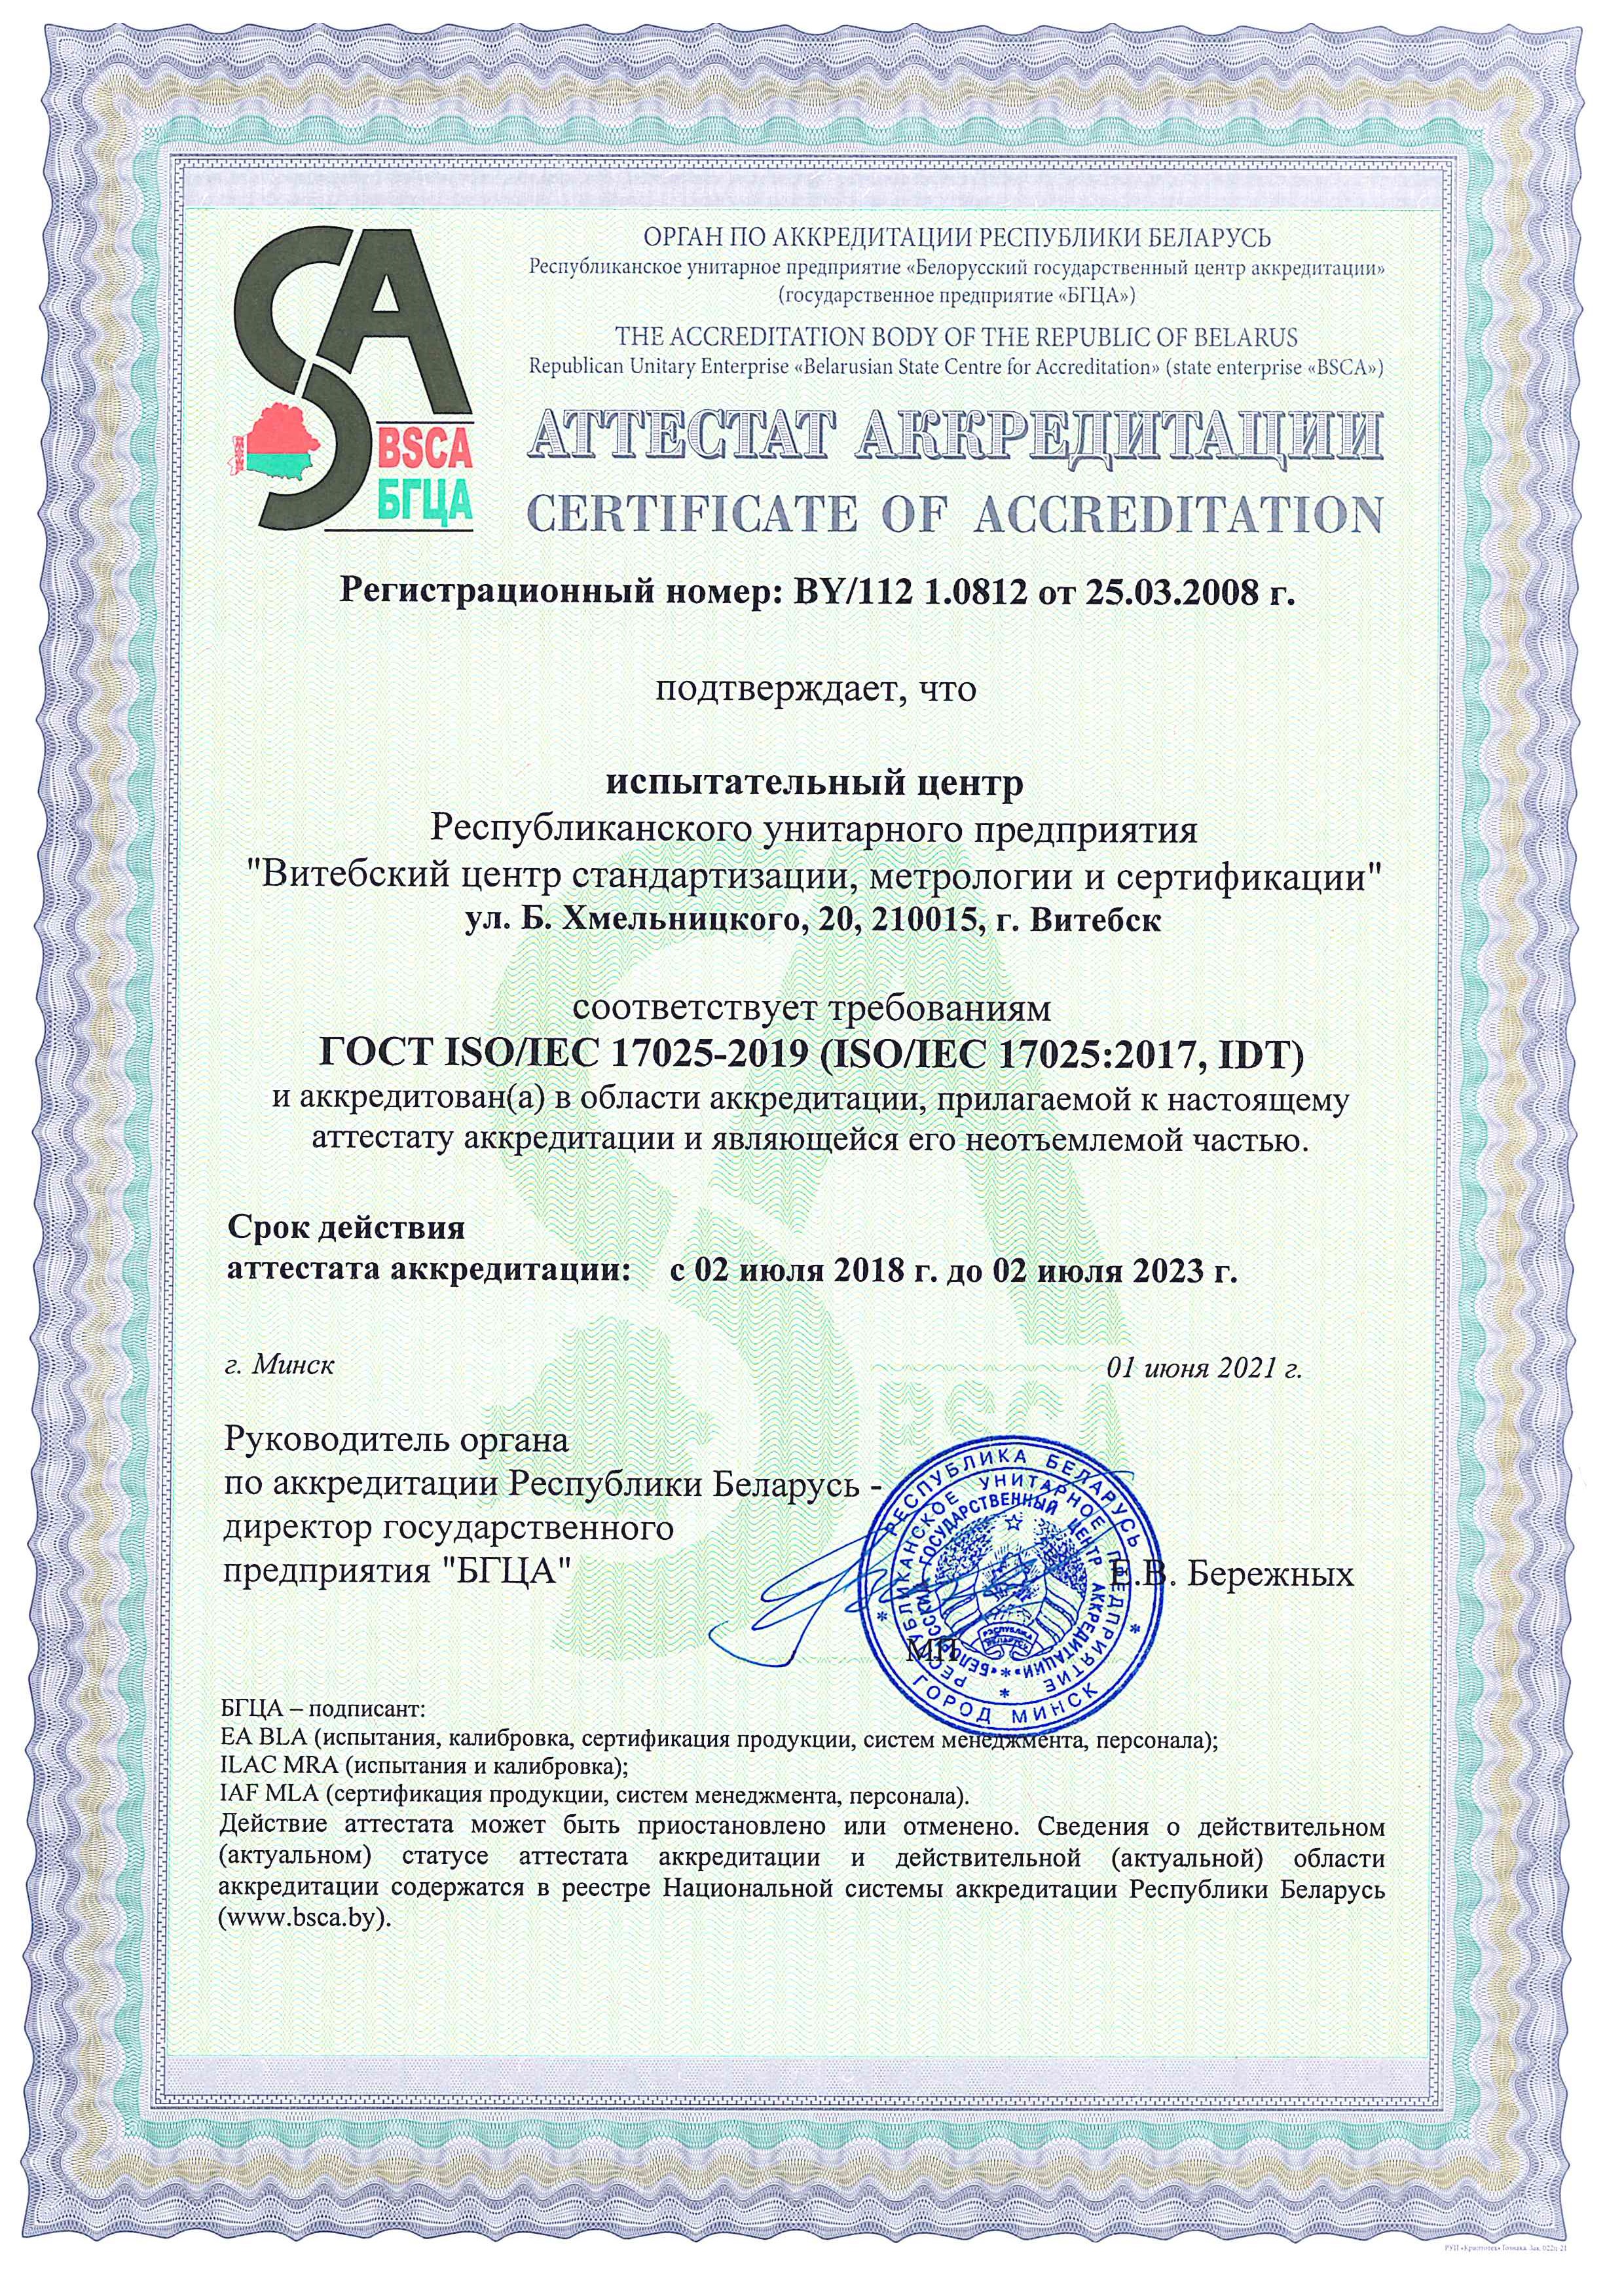 Аттестат аккредитации № BY/112 1.0812 от 25.03.2008